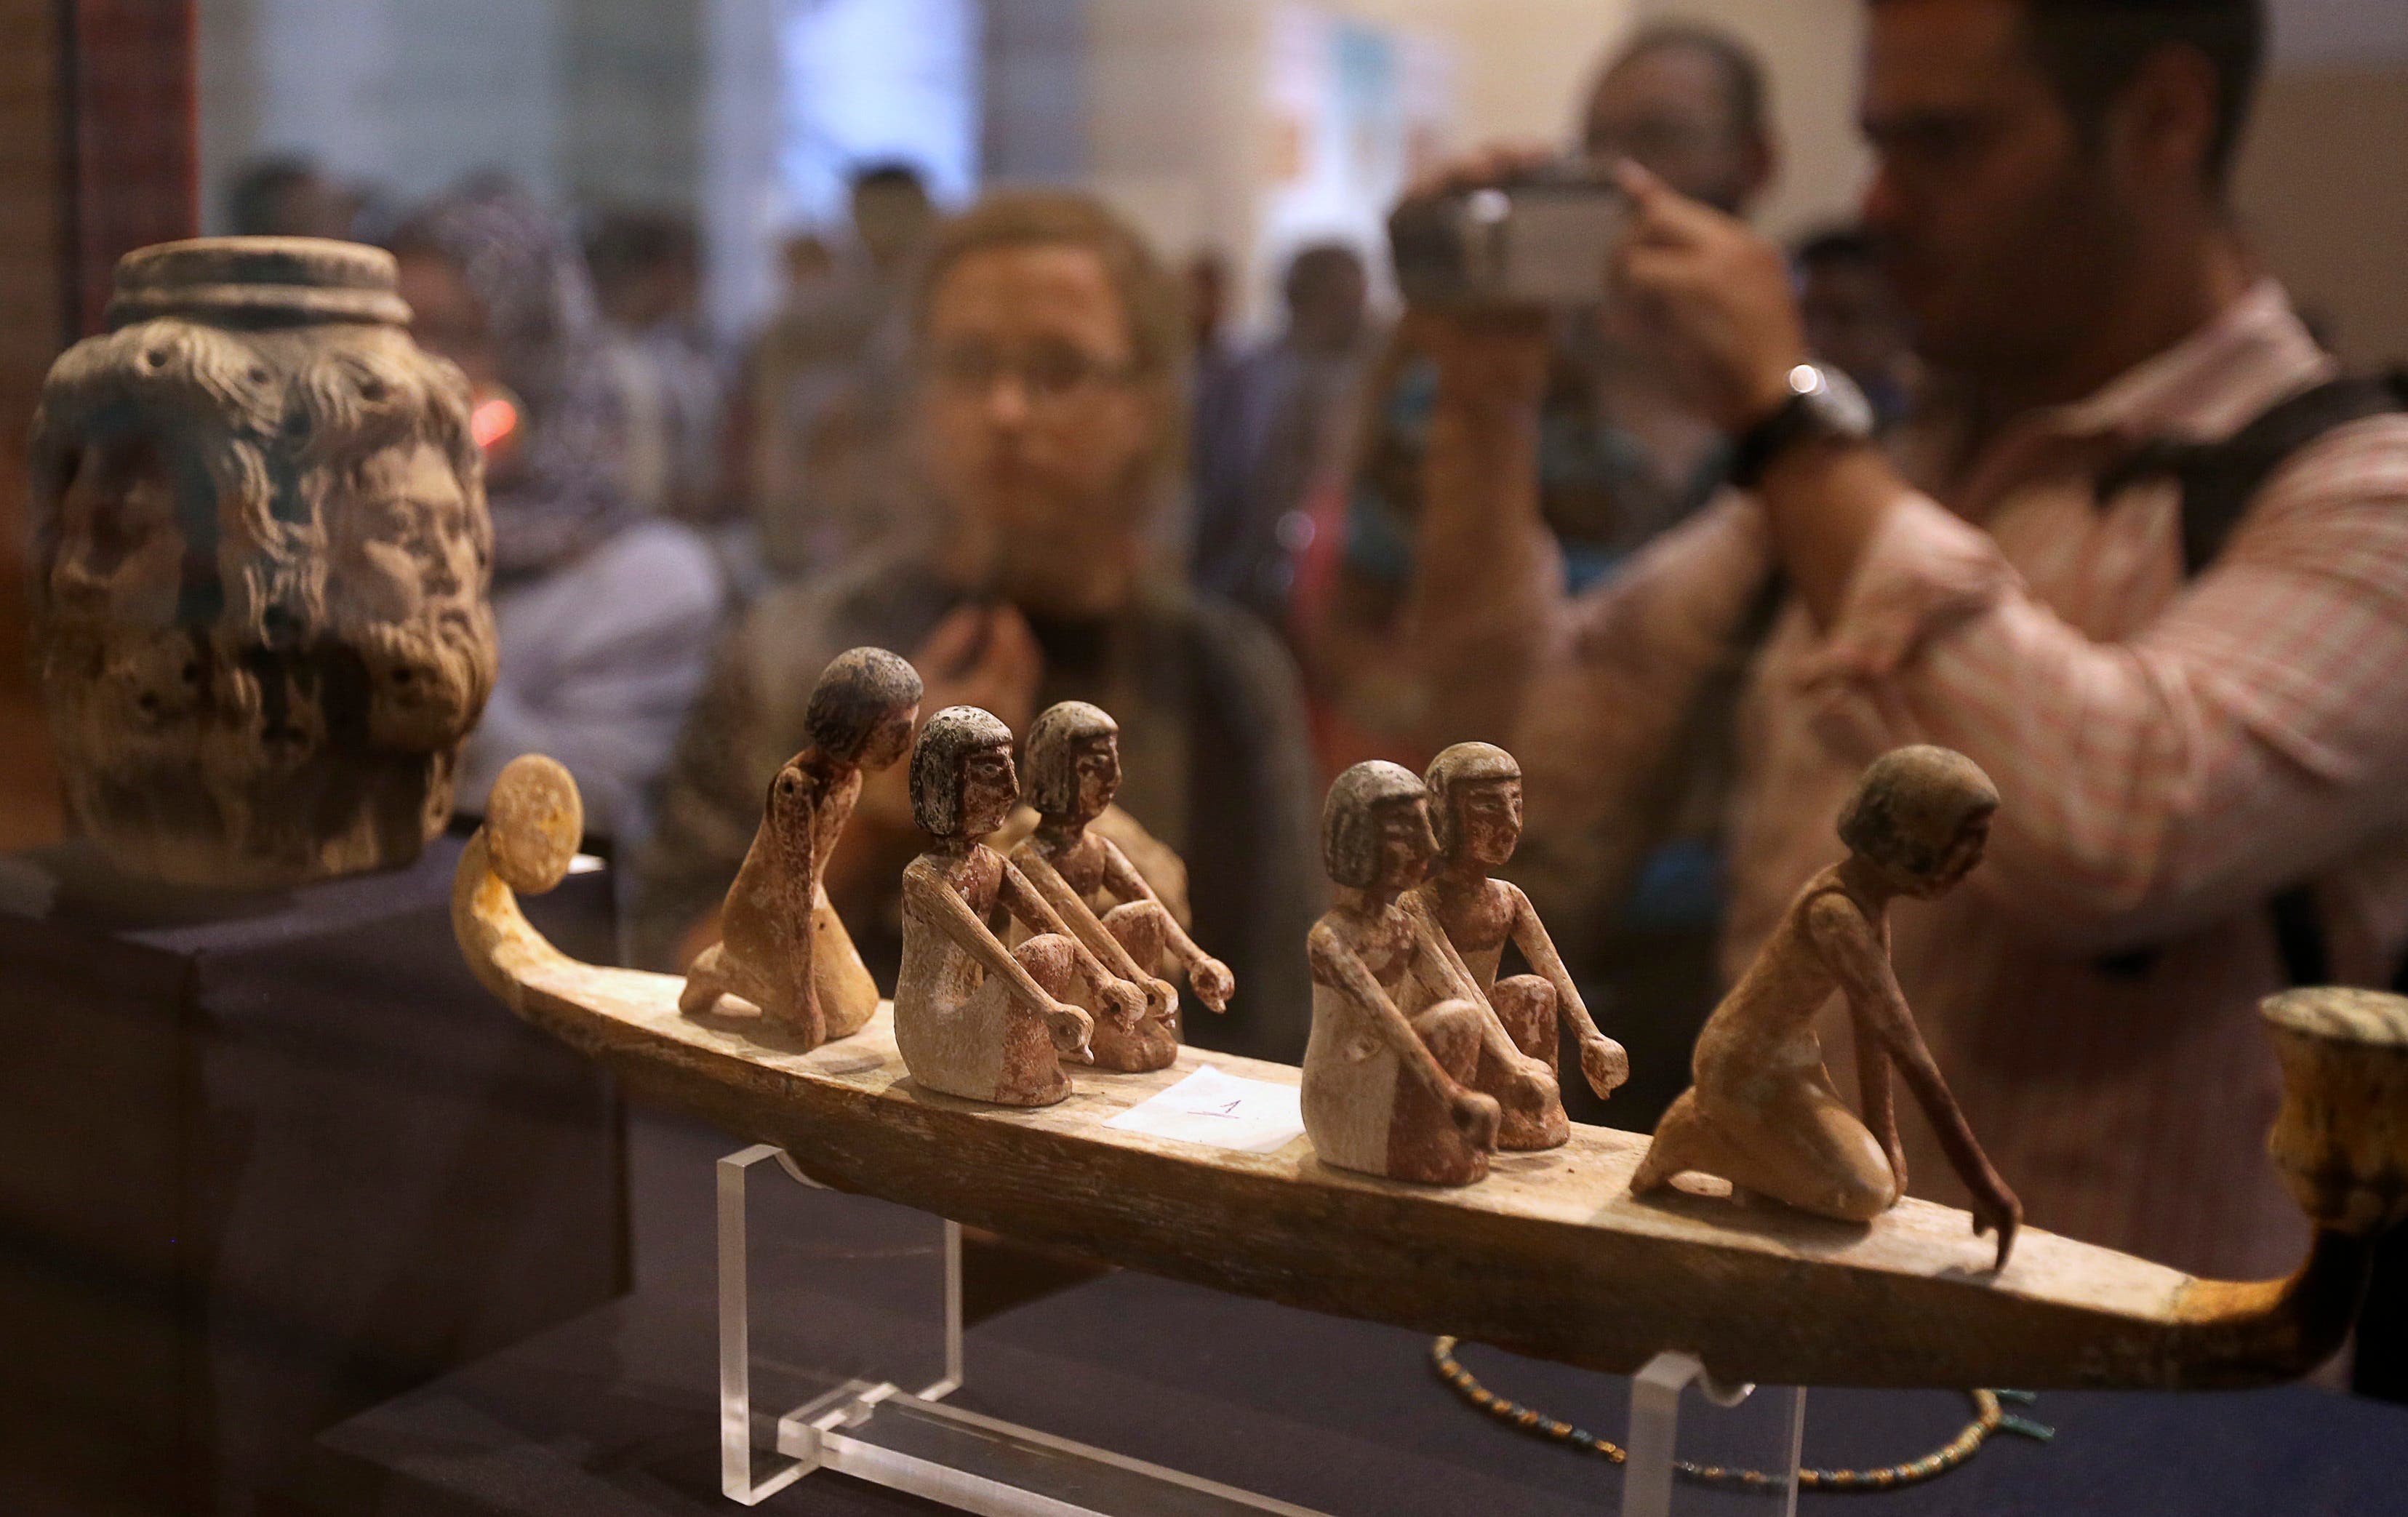 Egypt repatriates artifacts, inaugurates museum 